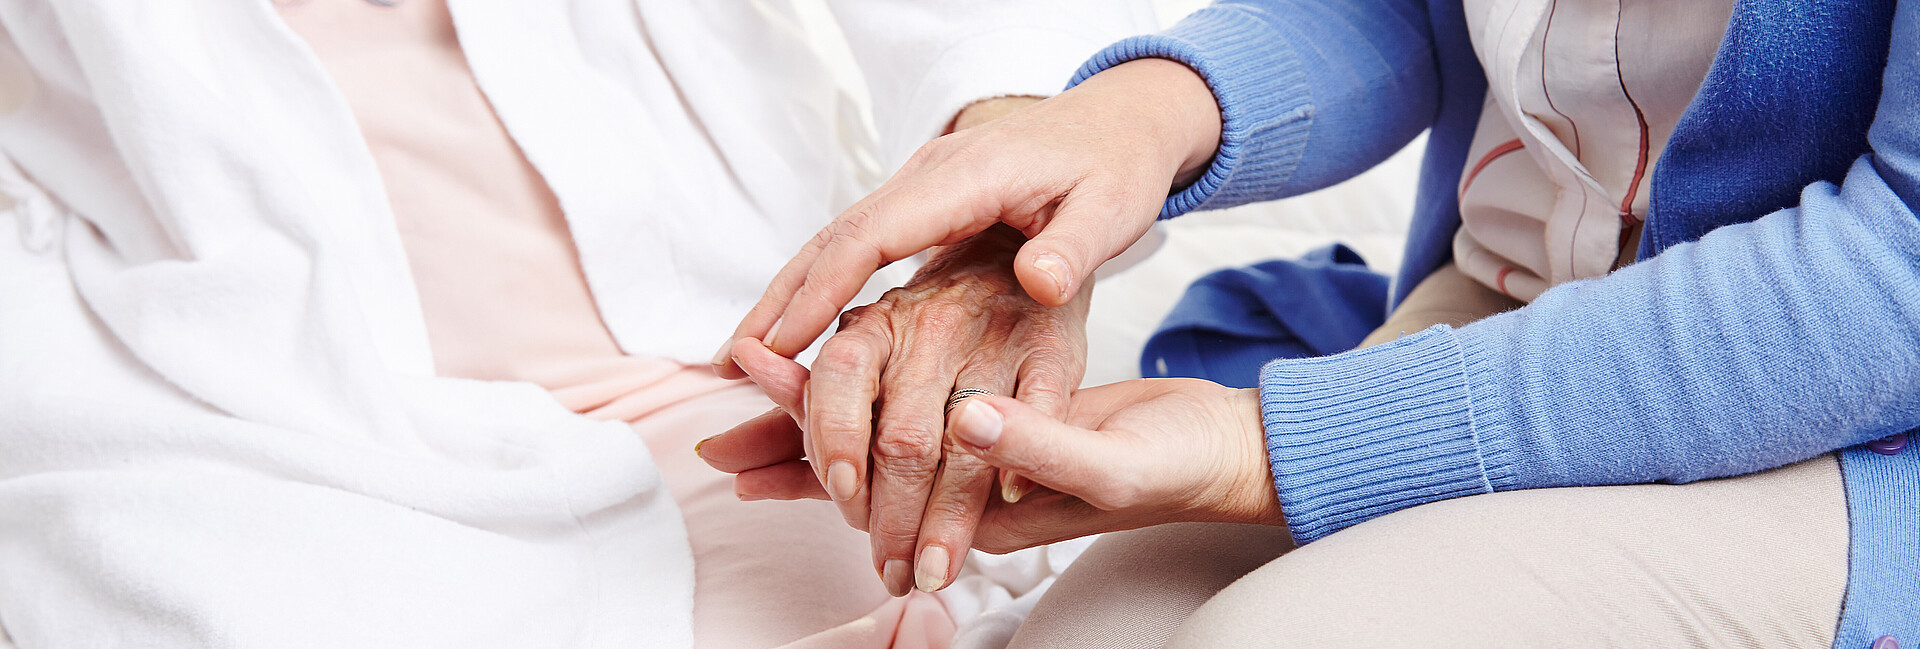 Frau hält Hand einer Seniorin